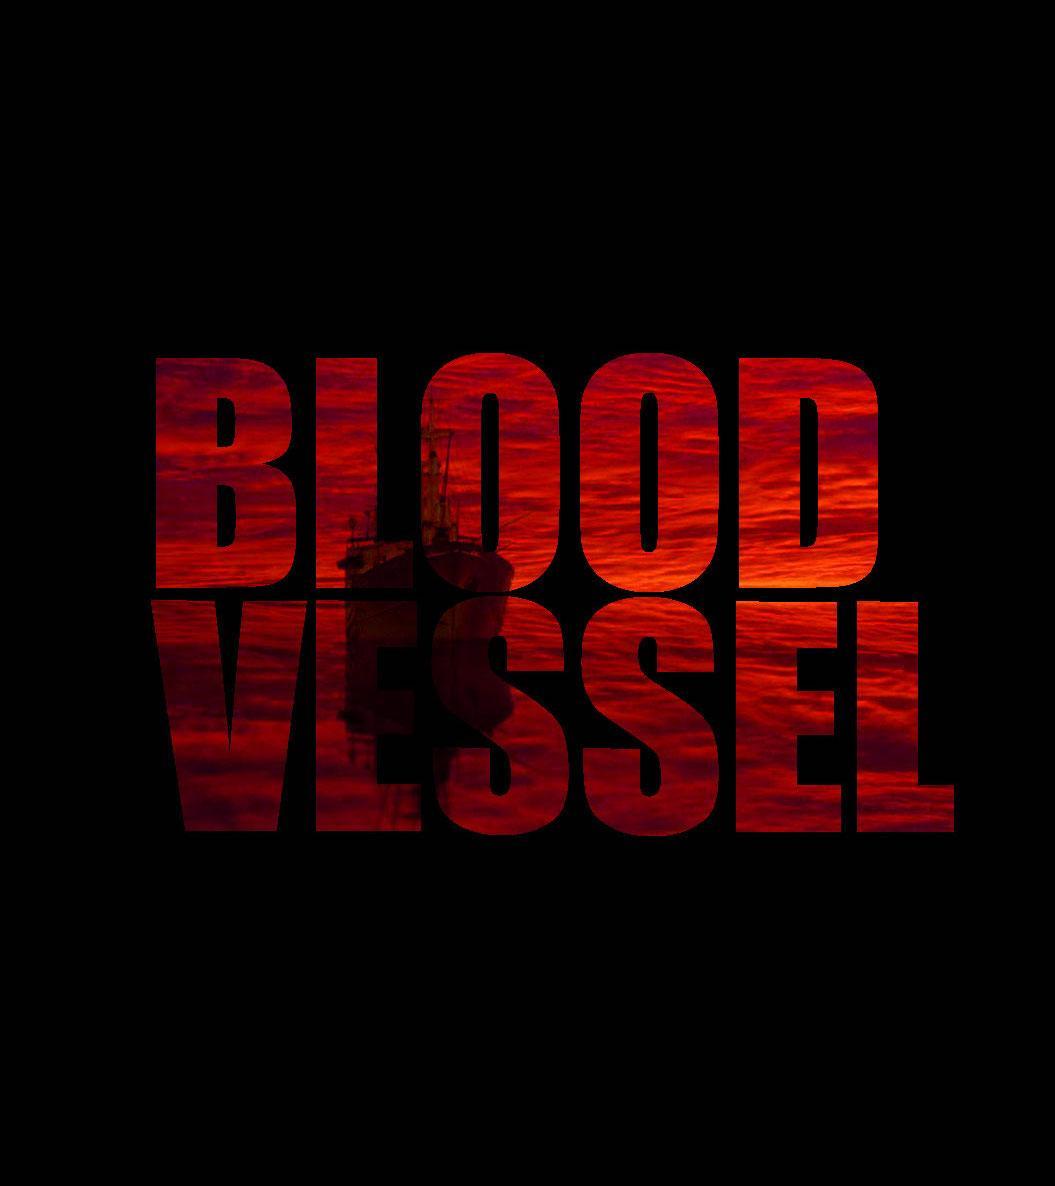 Постер фильма Кровавое судно | Blood Vessel